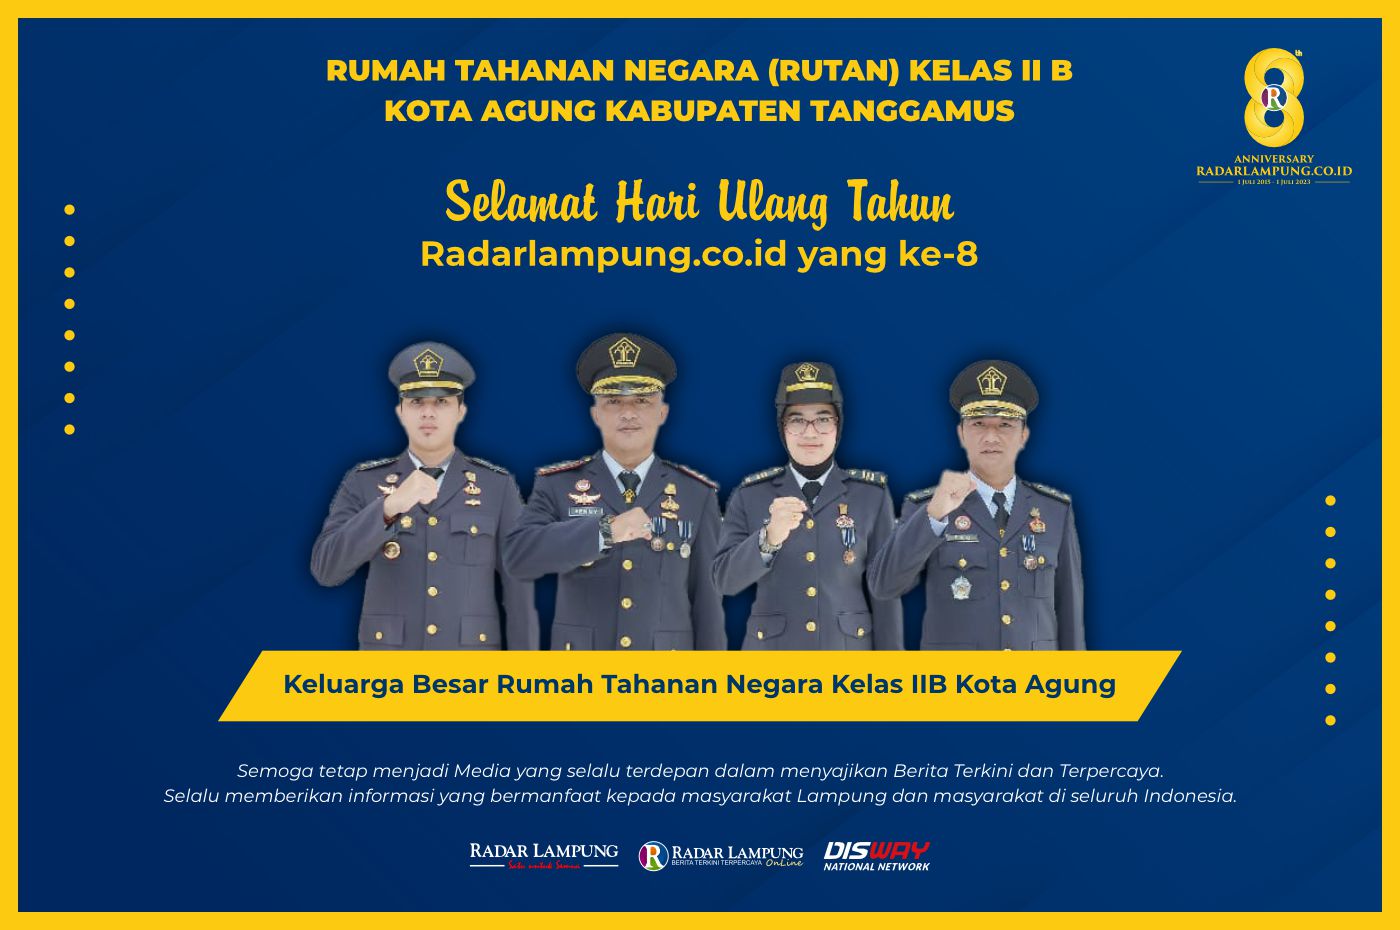 RUTAN Kelas II B Kota Agung Kabupaten Tanggamus: Selamat HUT ke-8 Radar Lampung Online